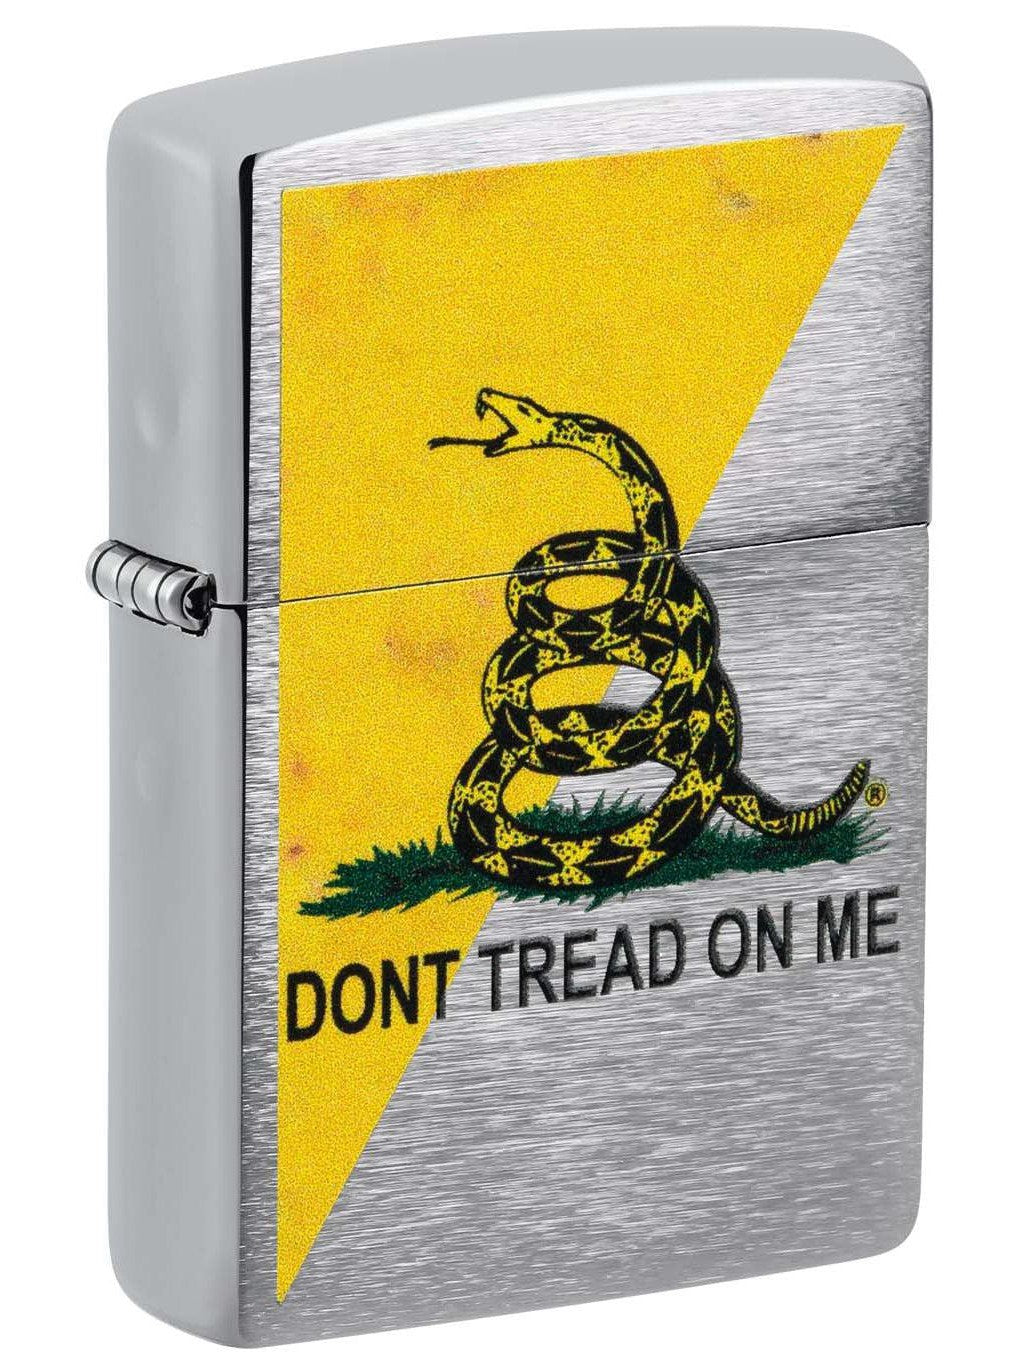 Zippo Lighter: Dont Tread on Me, Gadsden Flag - Brushed Chrome 48118